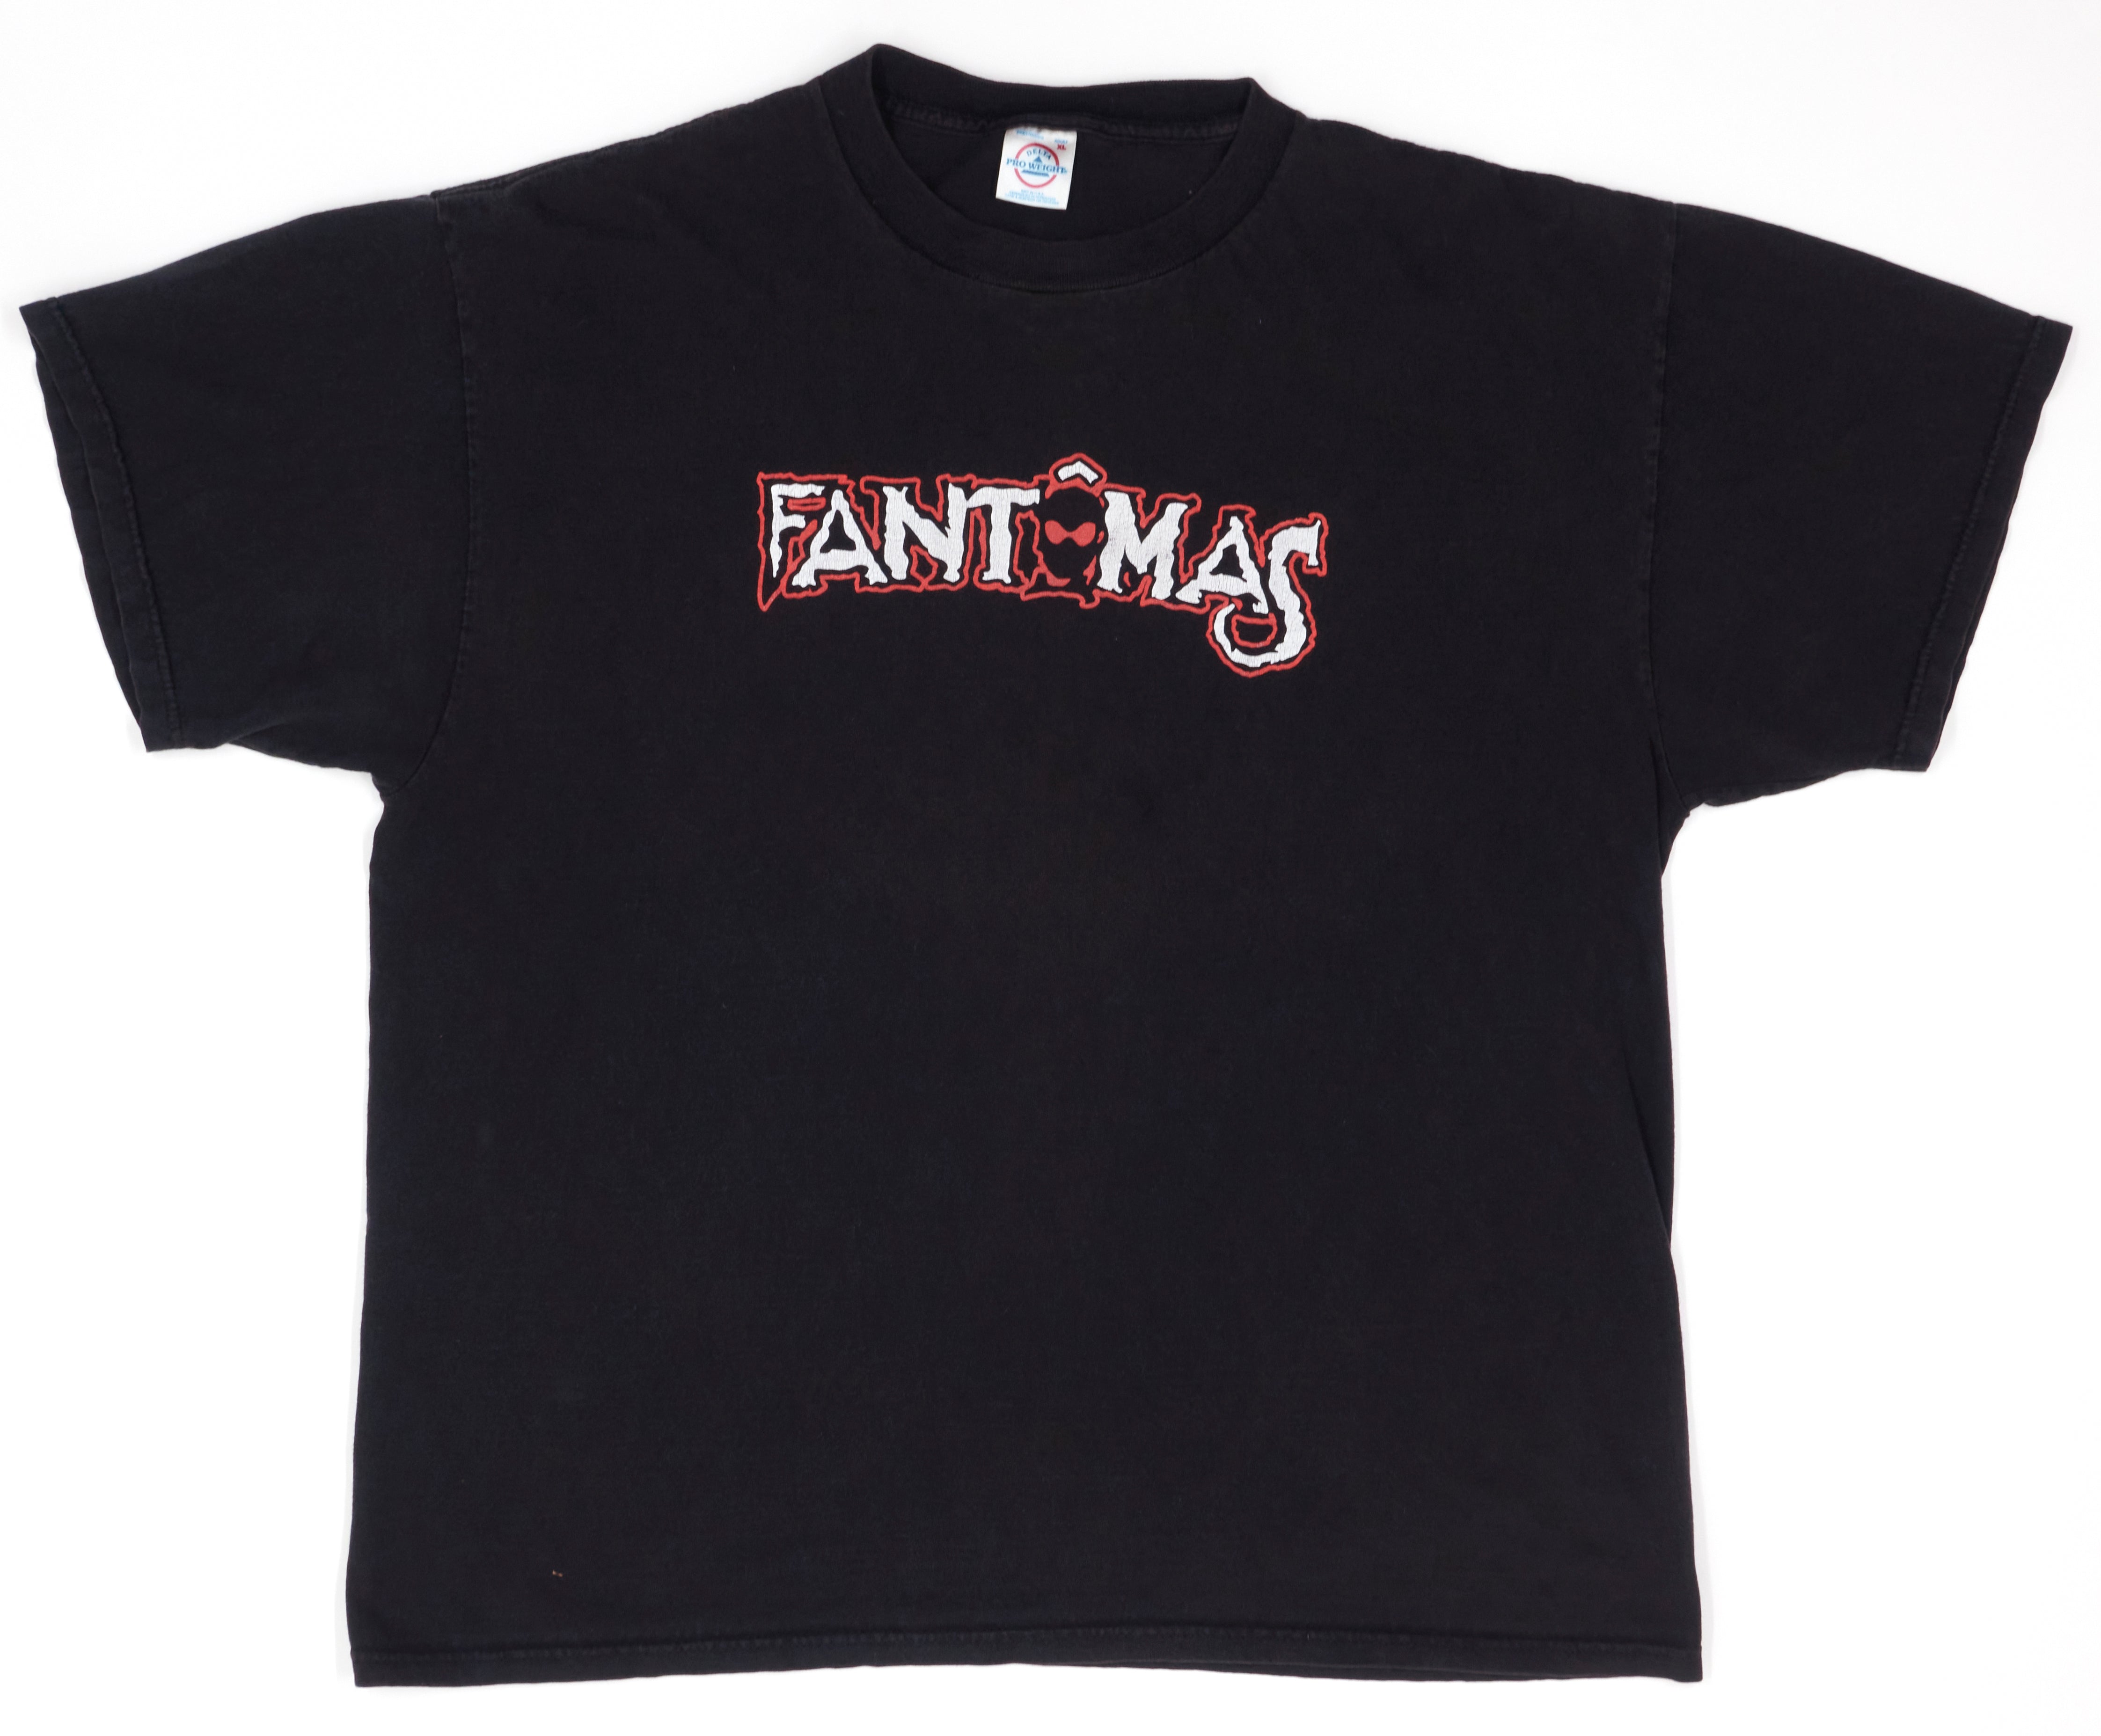 Fantômas - Delìrium Còrdia 2004 Tour Issue Shirt Size XL